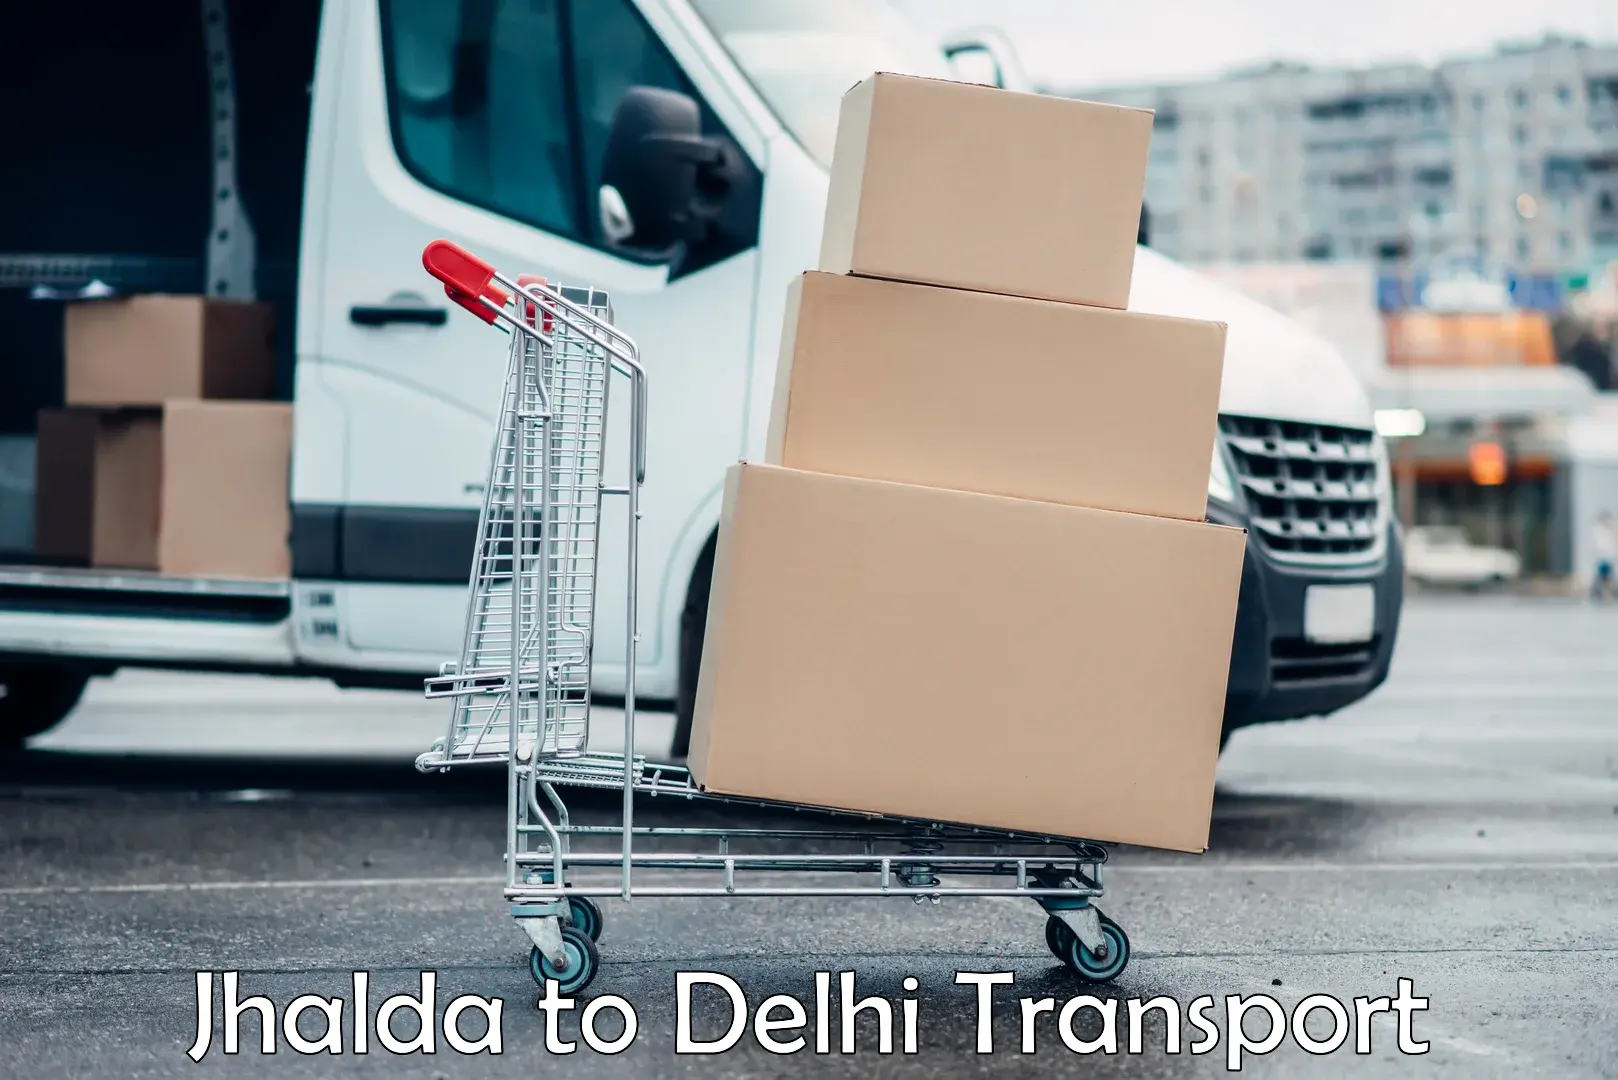 Land transport services Jhalda to IIT Delhi